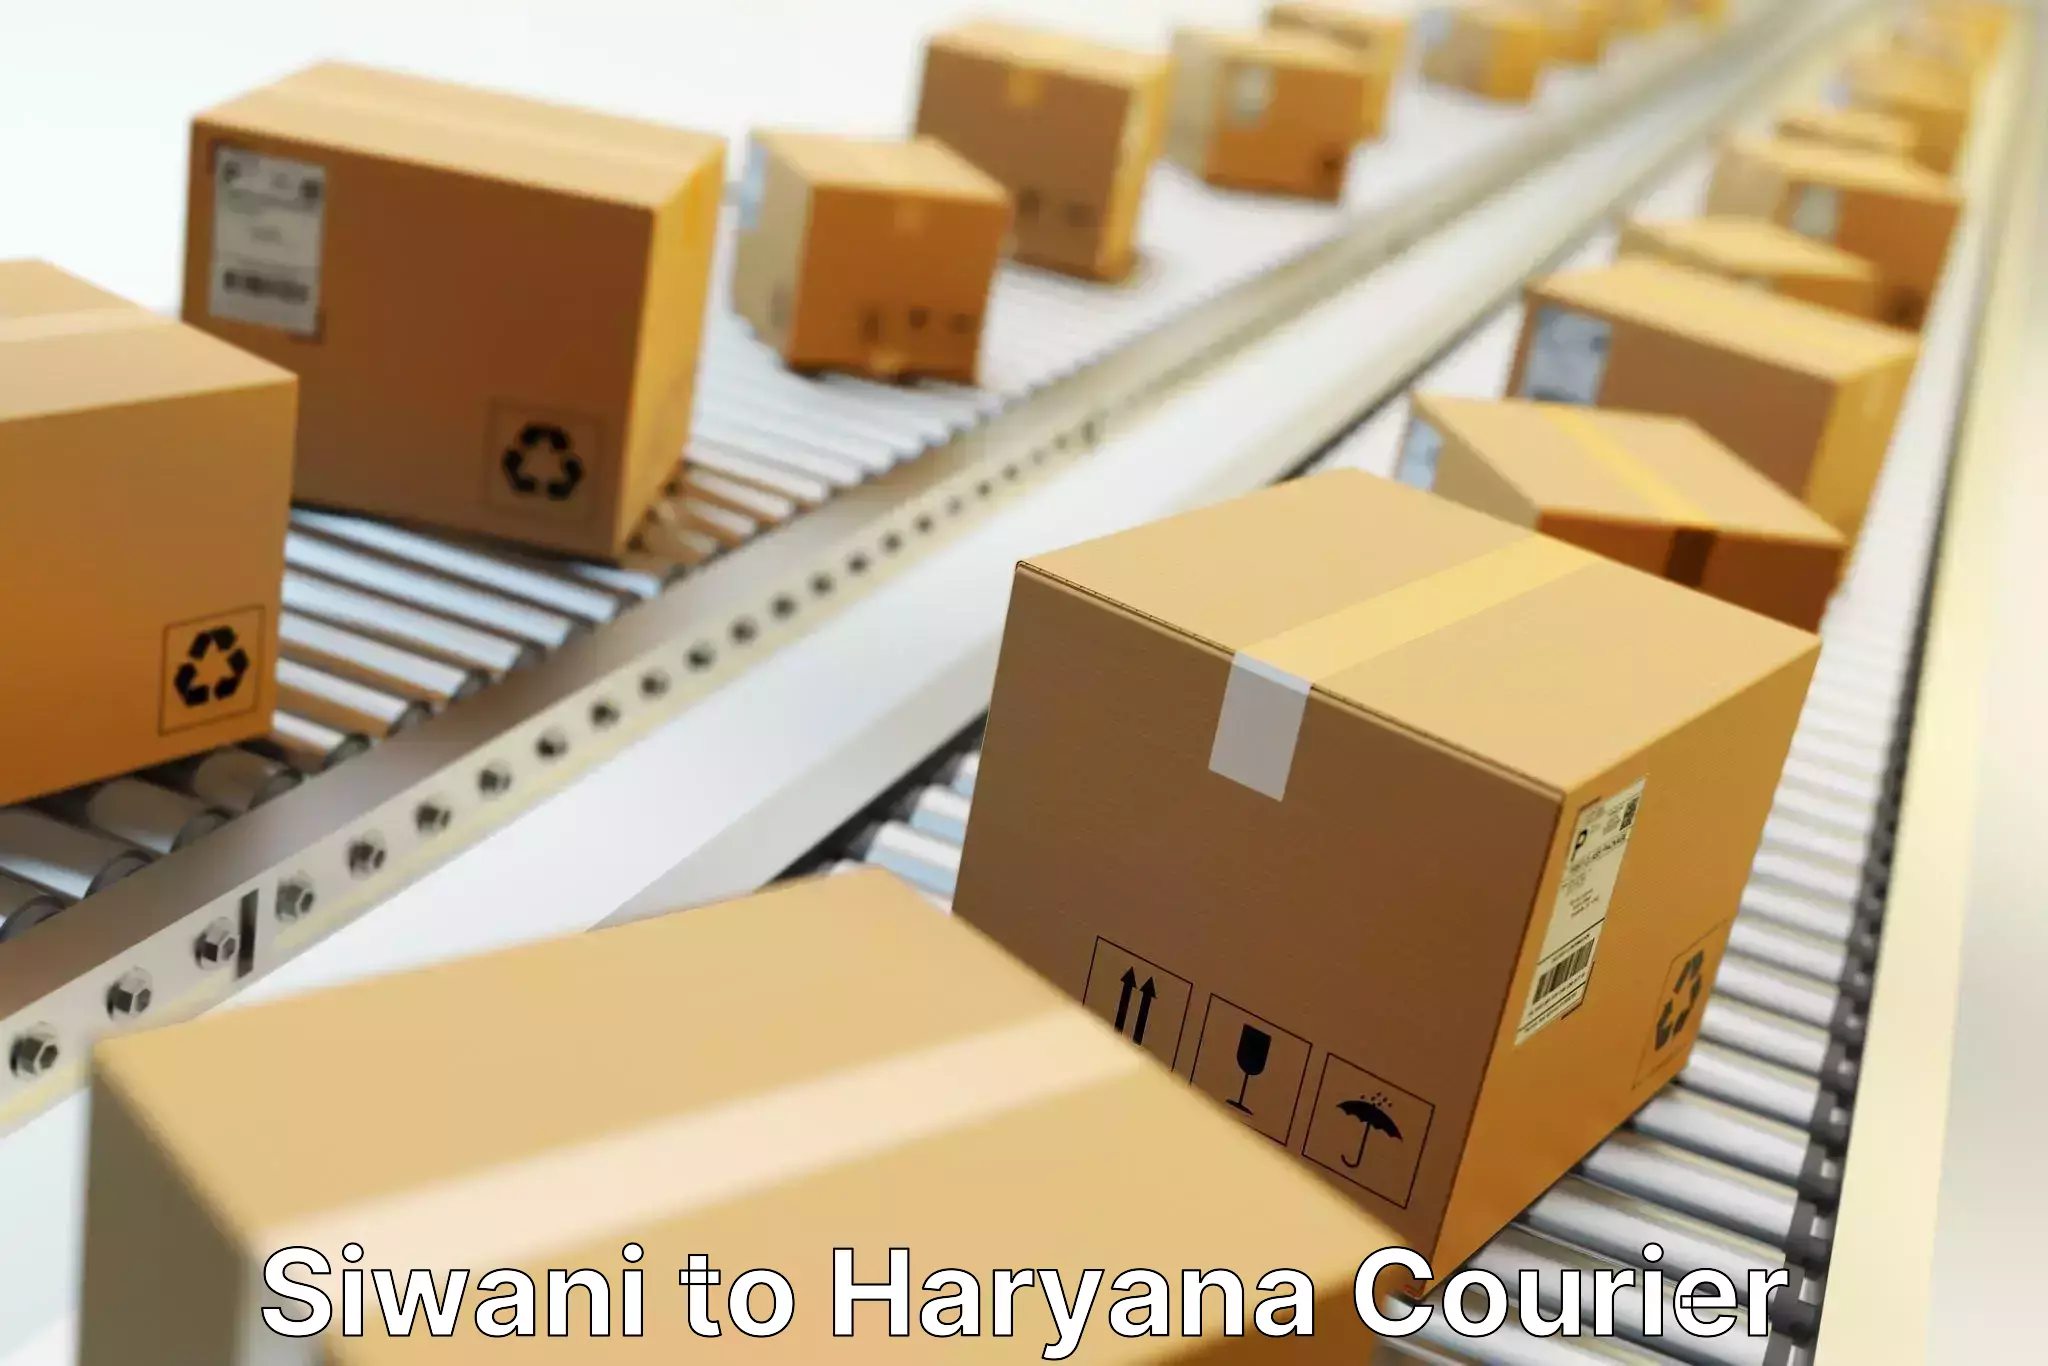 Expedited shipping methods Siwani to Hansi